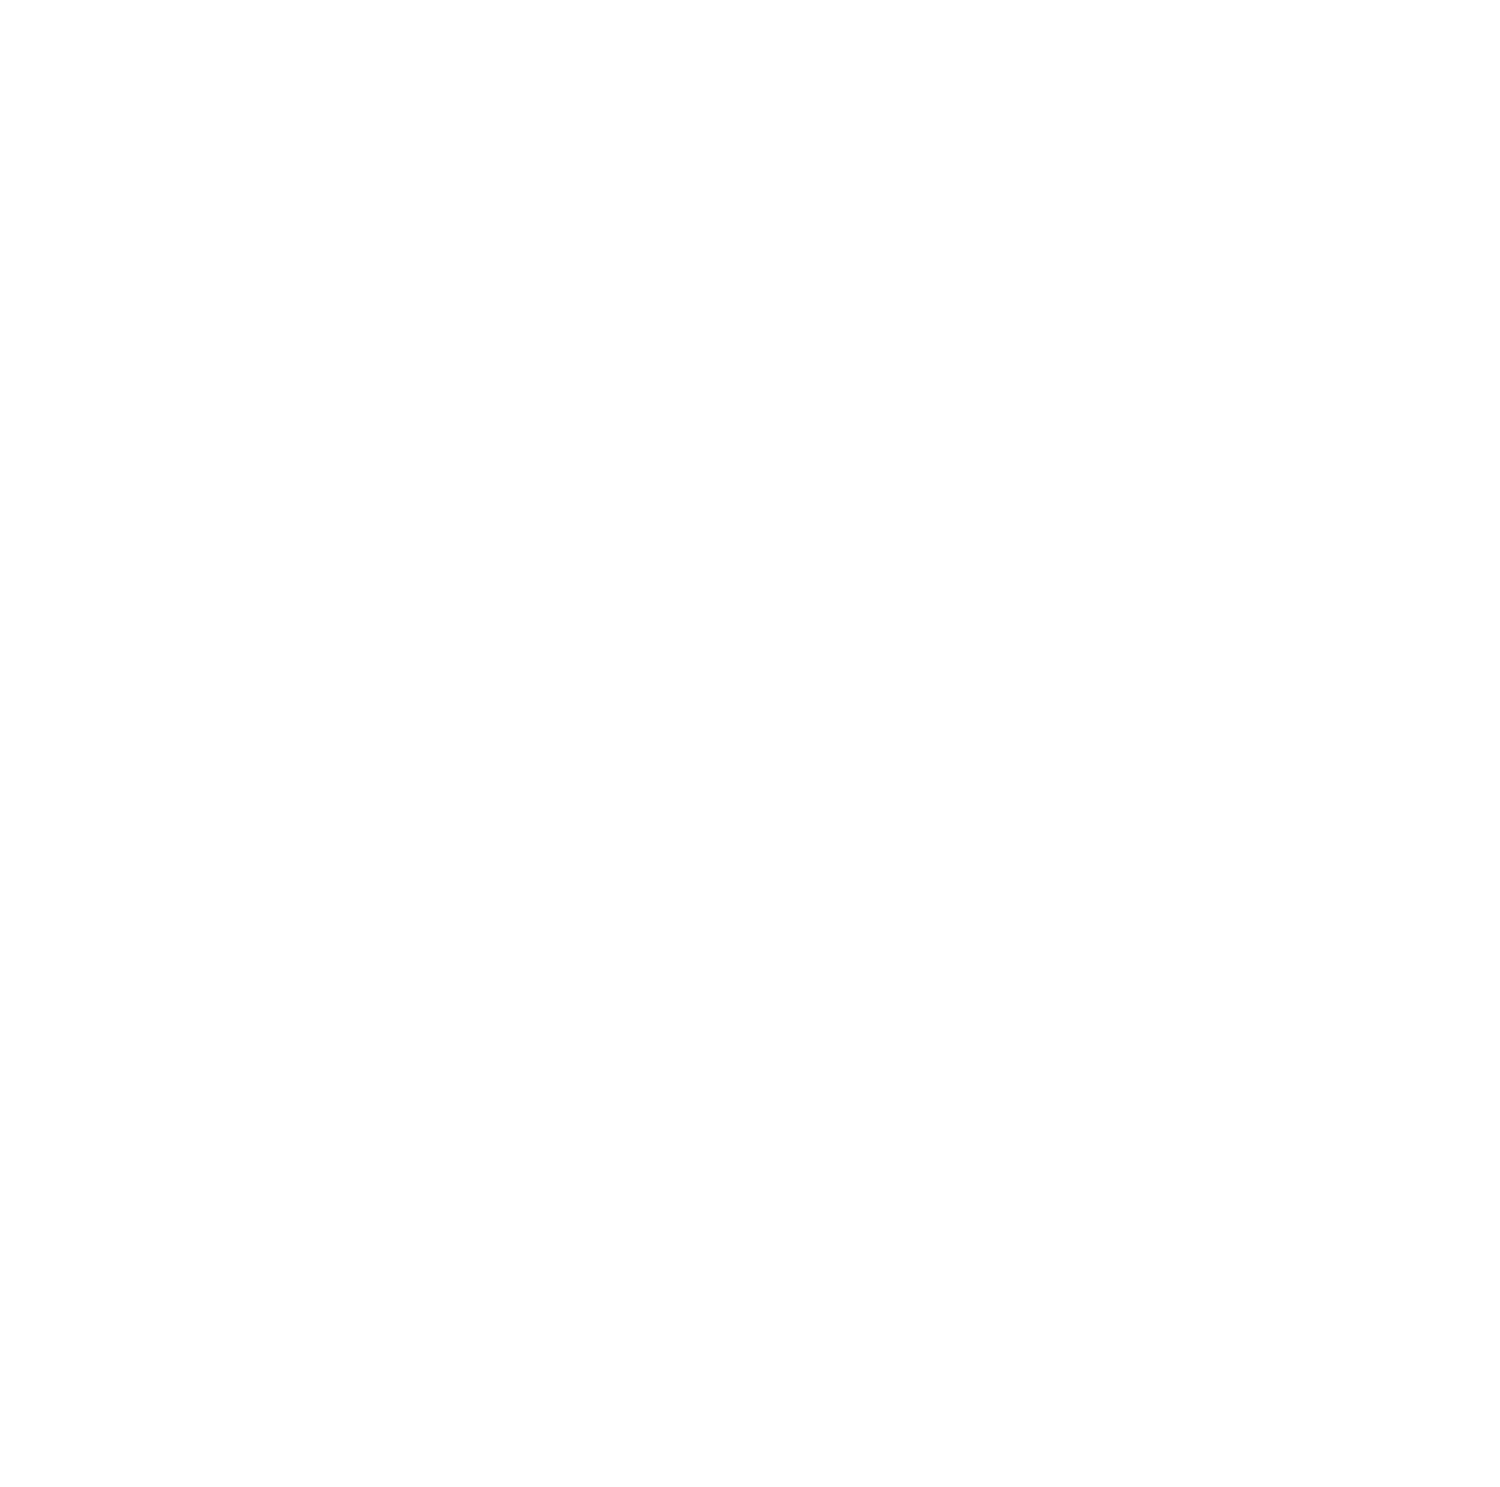 Golden Moon Speakeasy